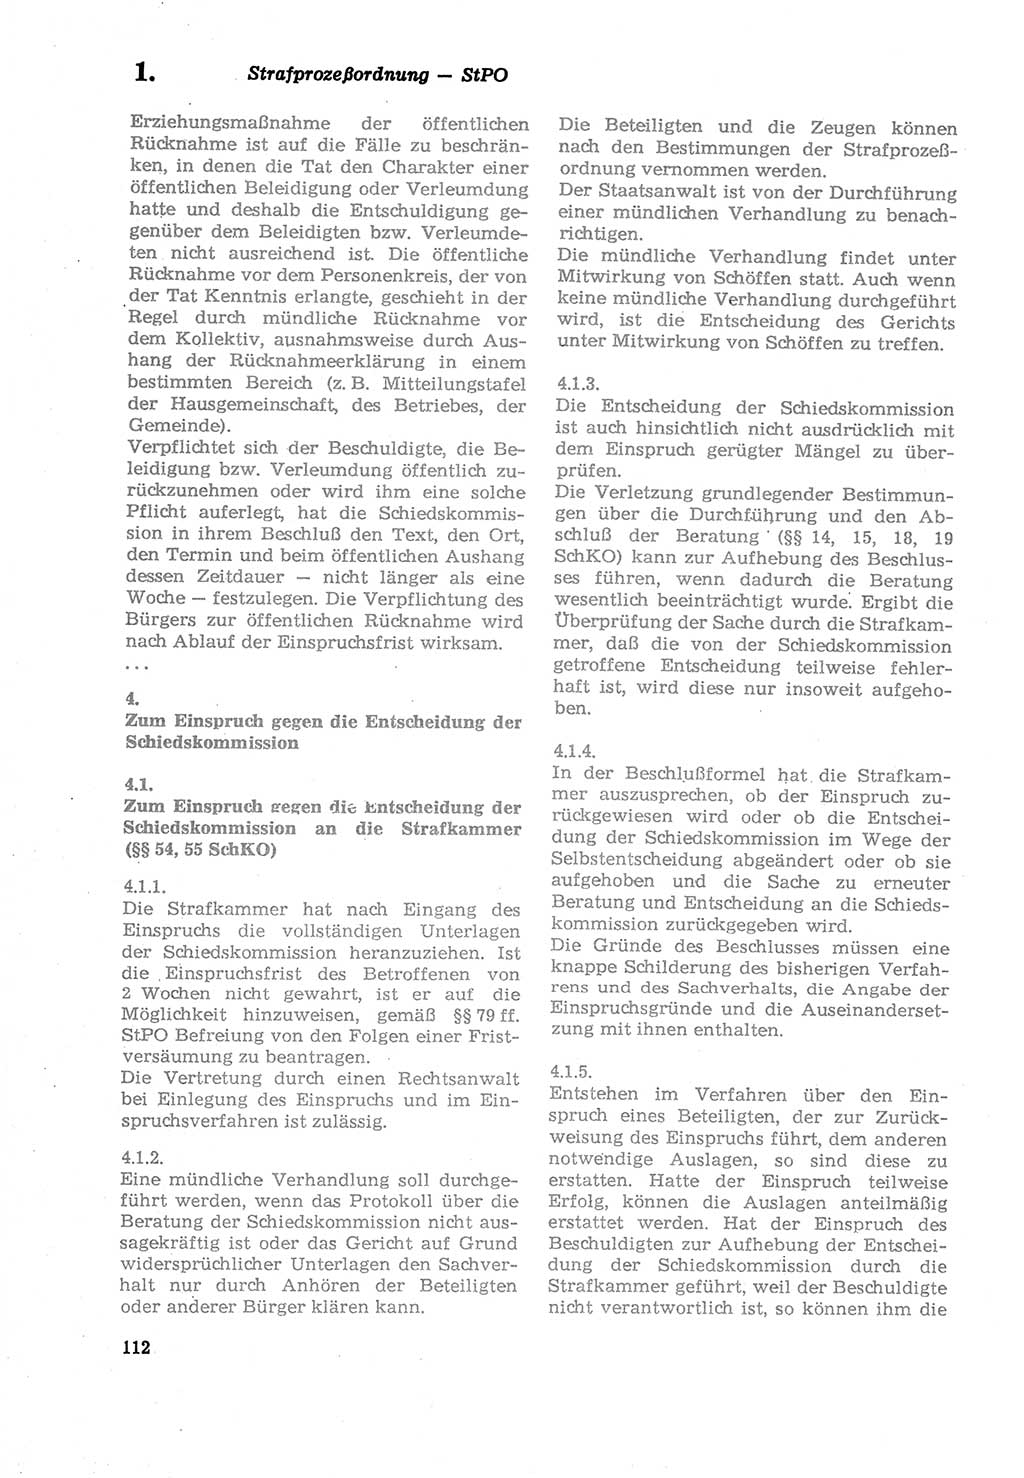 Strafprozeßordnung (StPO) der Deutschen Demokratischen Republik (DDR) sowie angrenzende Gesetze und Bestimmungen 1979, Seite 112 (StPO DDR Ges. Best. 1979, S. 112)